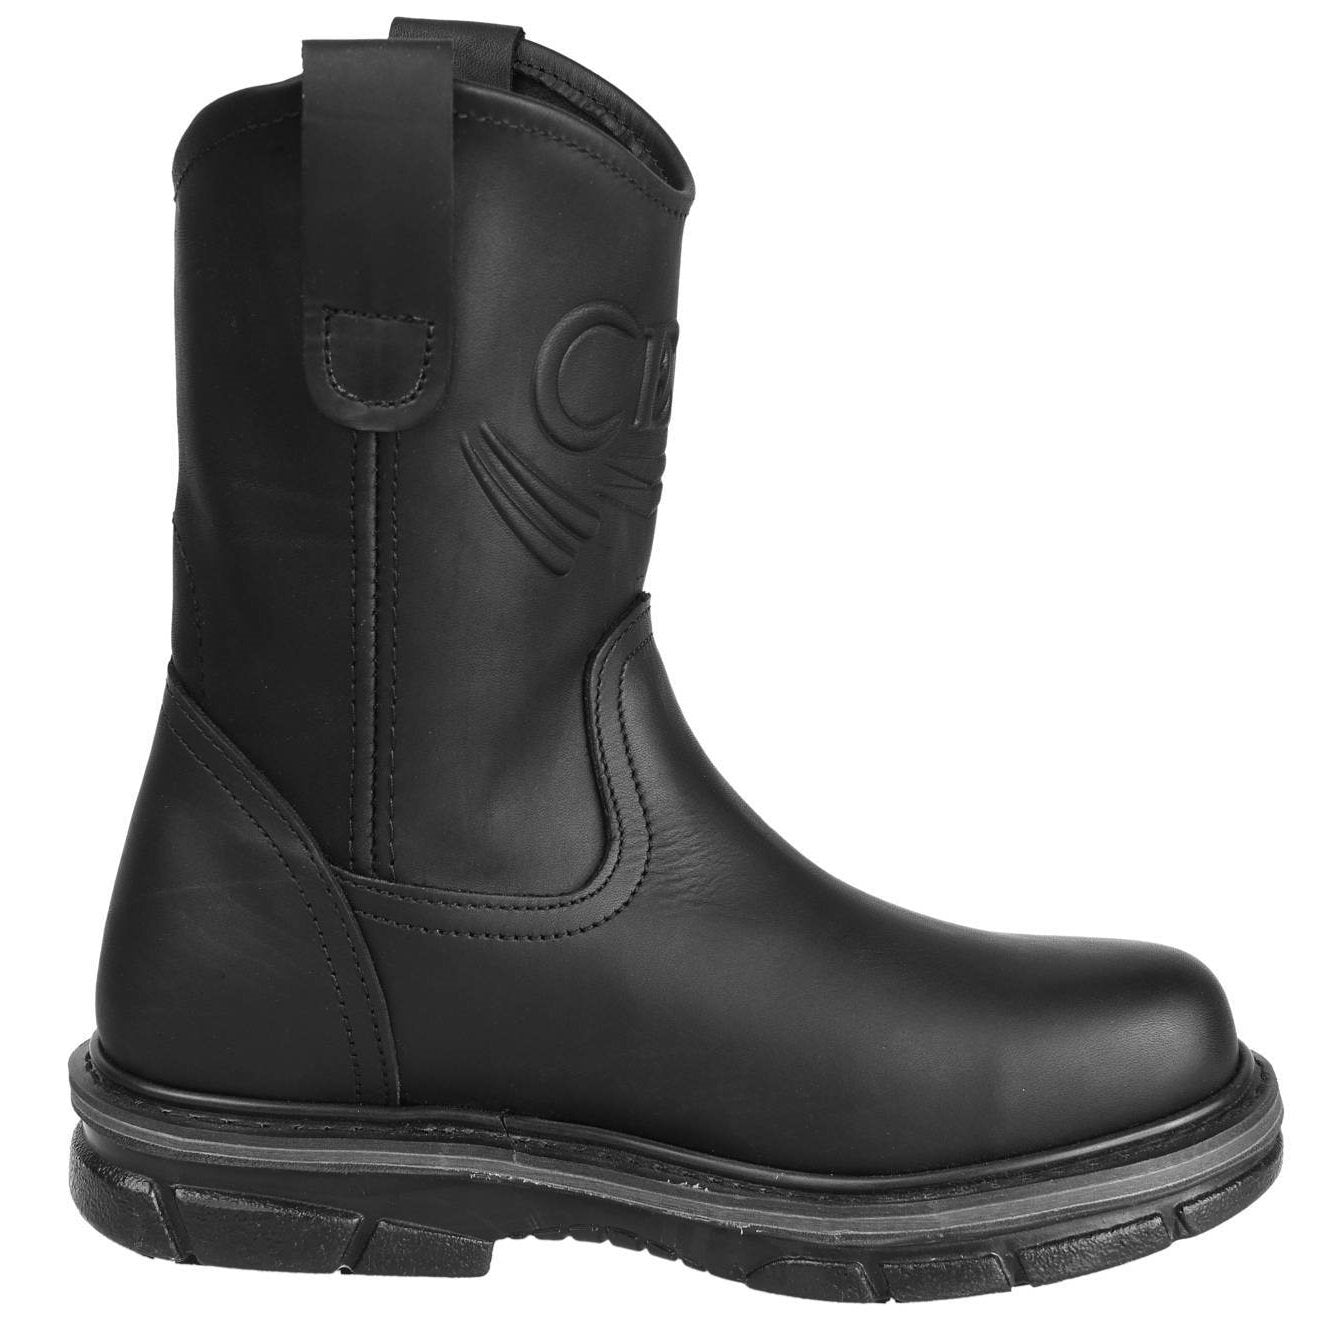 Men's Work Boots - Non Slip - Black Work Boots - Cebu - Pull On Work Boots - Black Wellington Work Boots